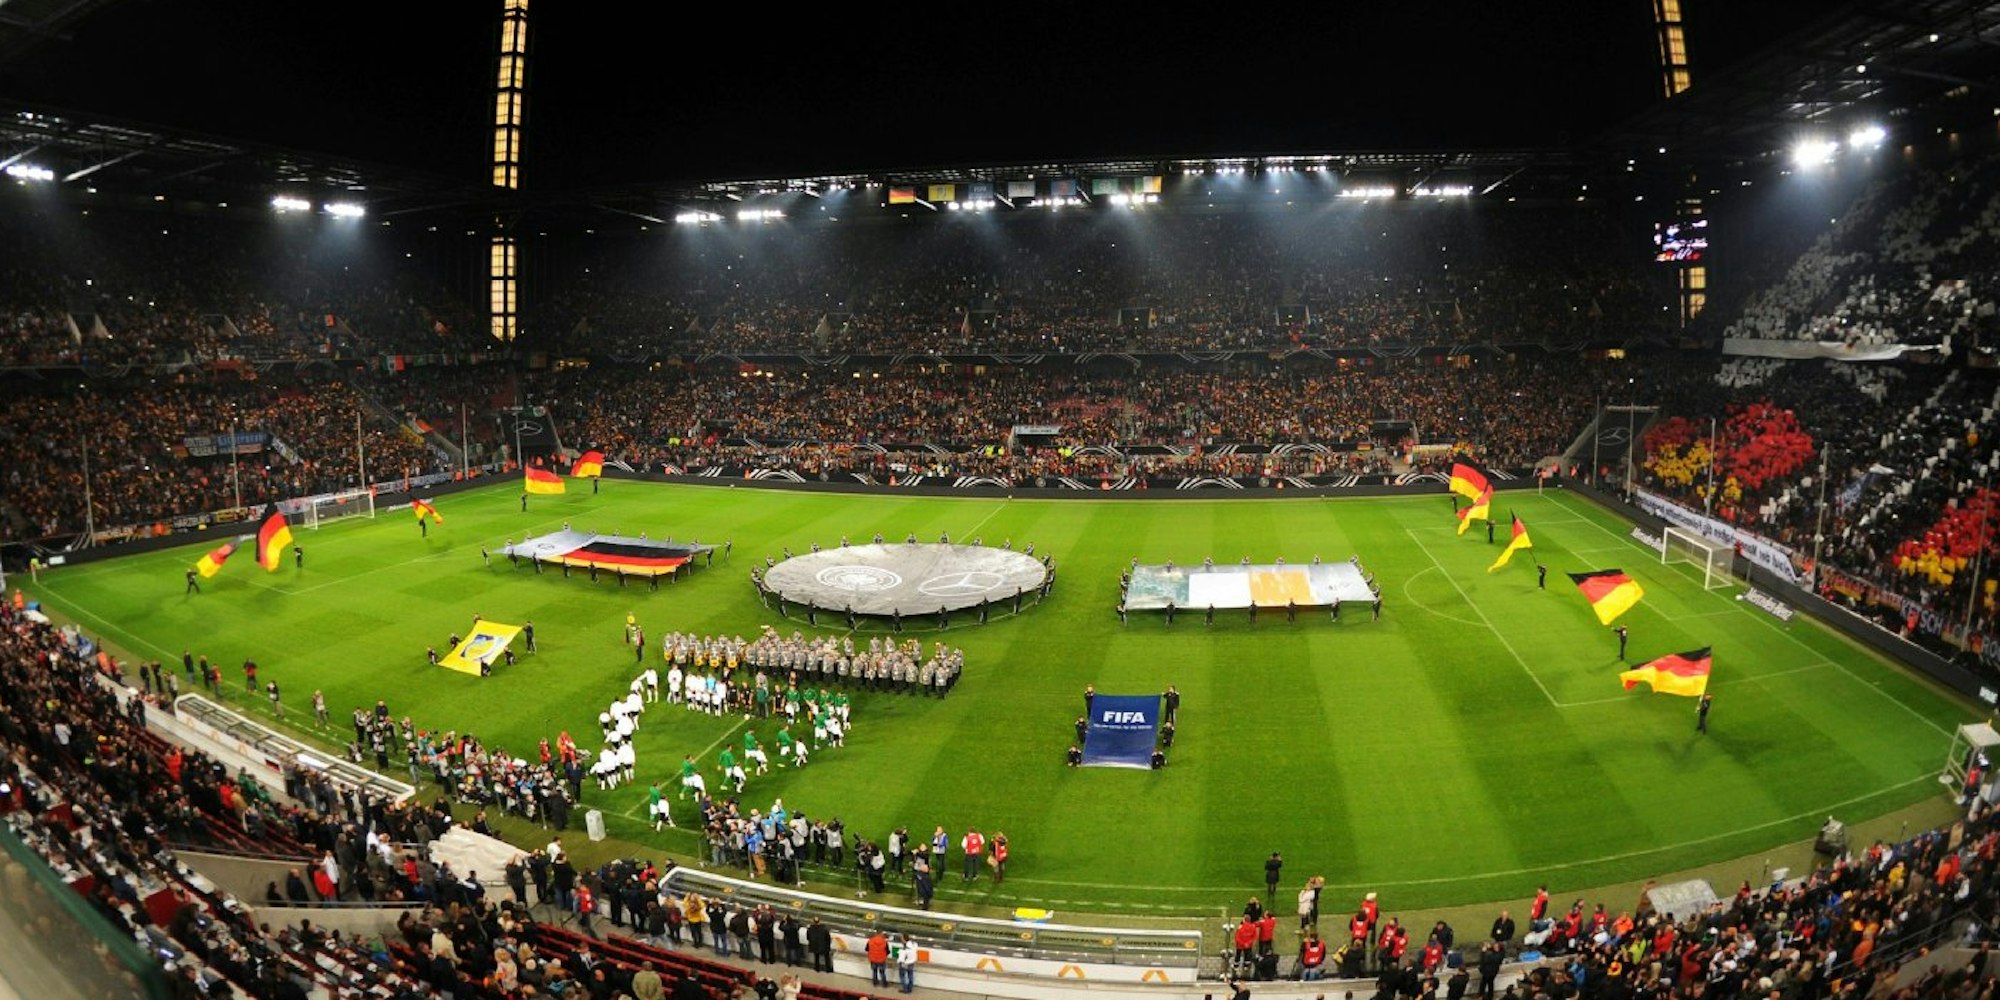 Das RheinEnergiestadion bei der WM-Qualifikation Deutschland - Irland am 11.10.2013.